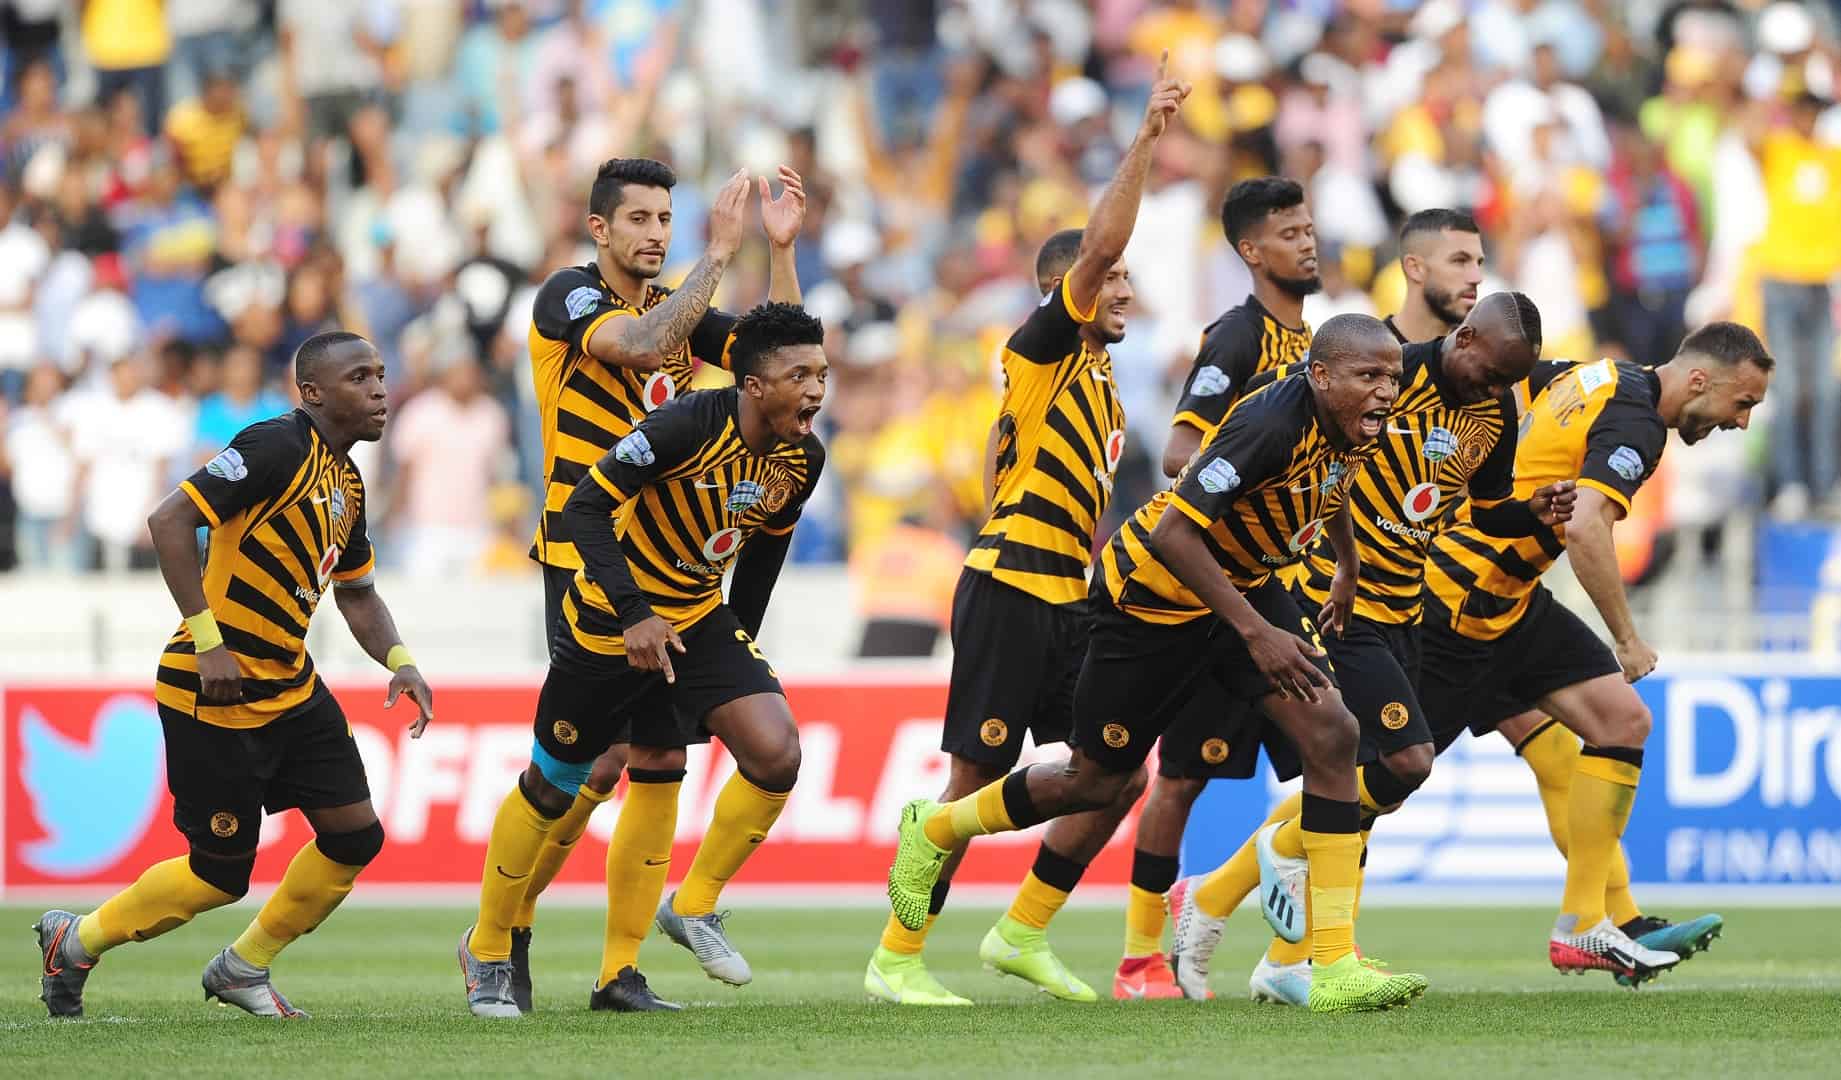 Kaizer Chiefs match in Port Elizabeth rescheduled